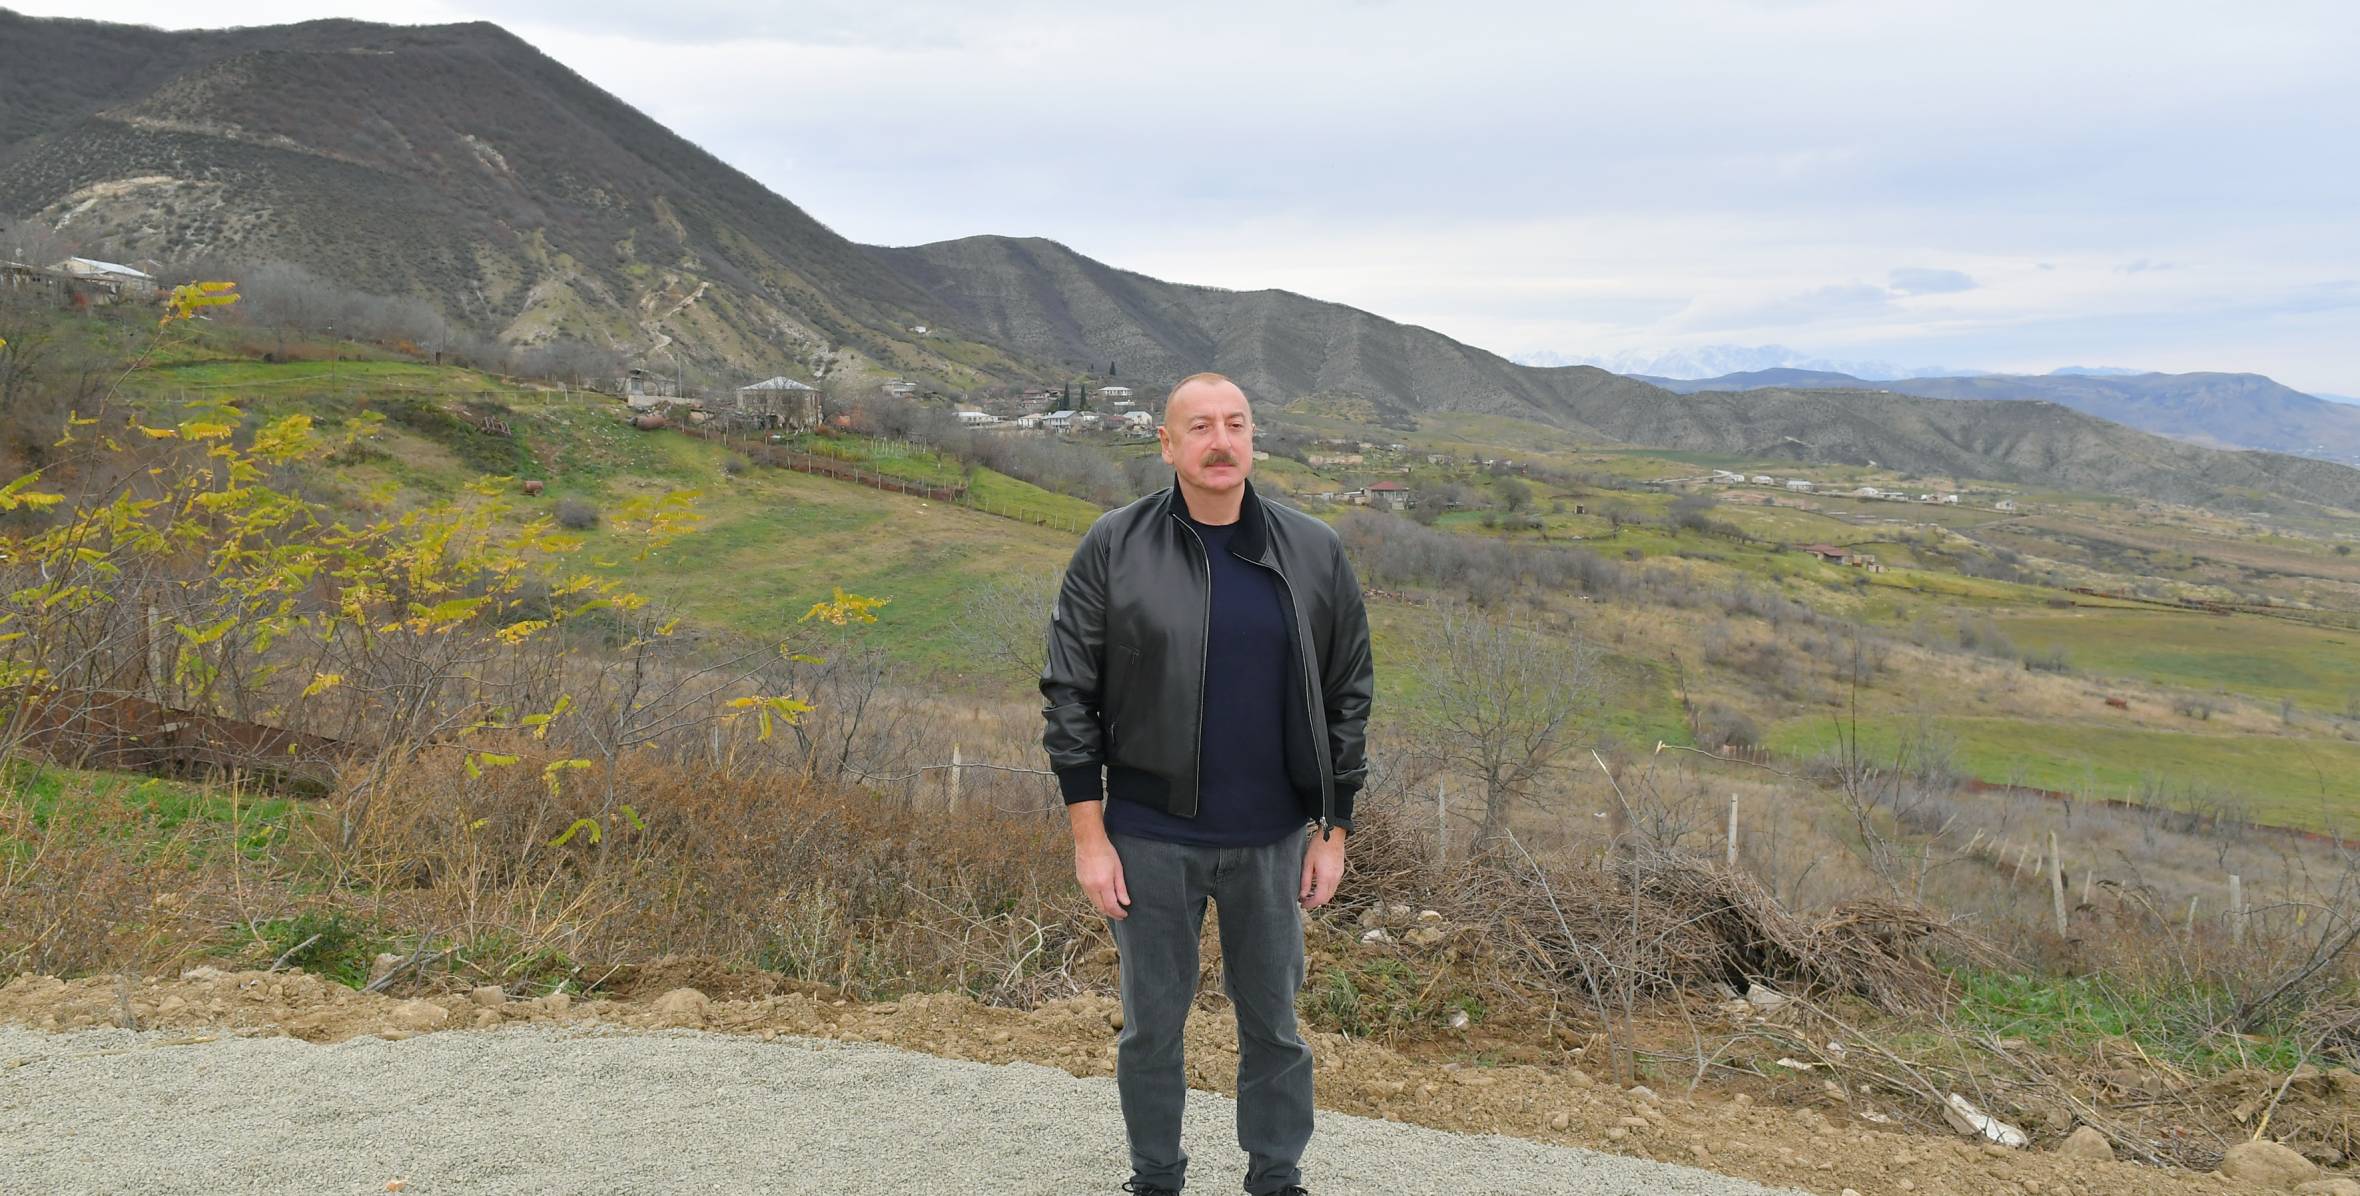 Ilham Aliyev visited village of Nakhchivanli in Khojaly